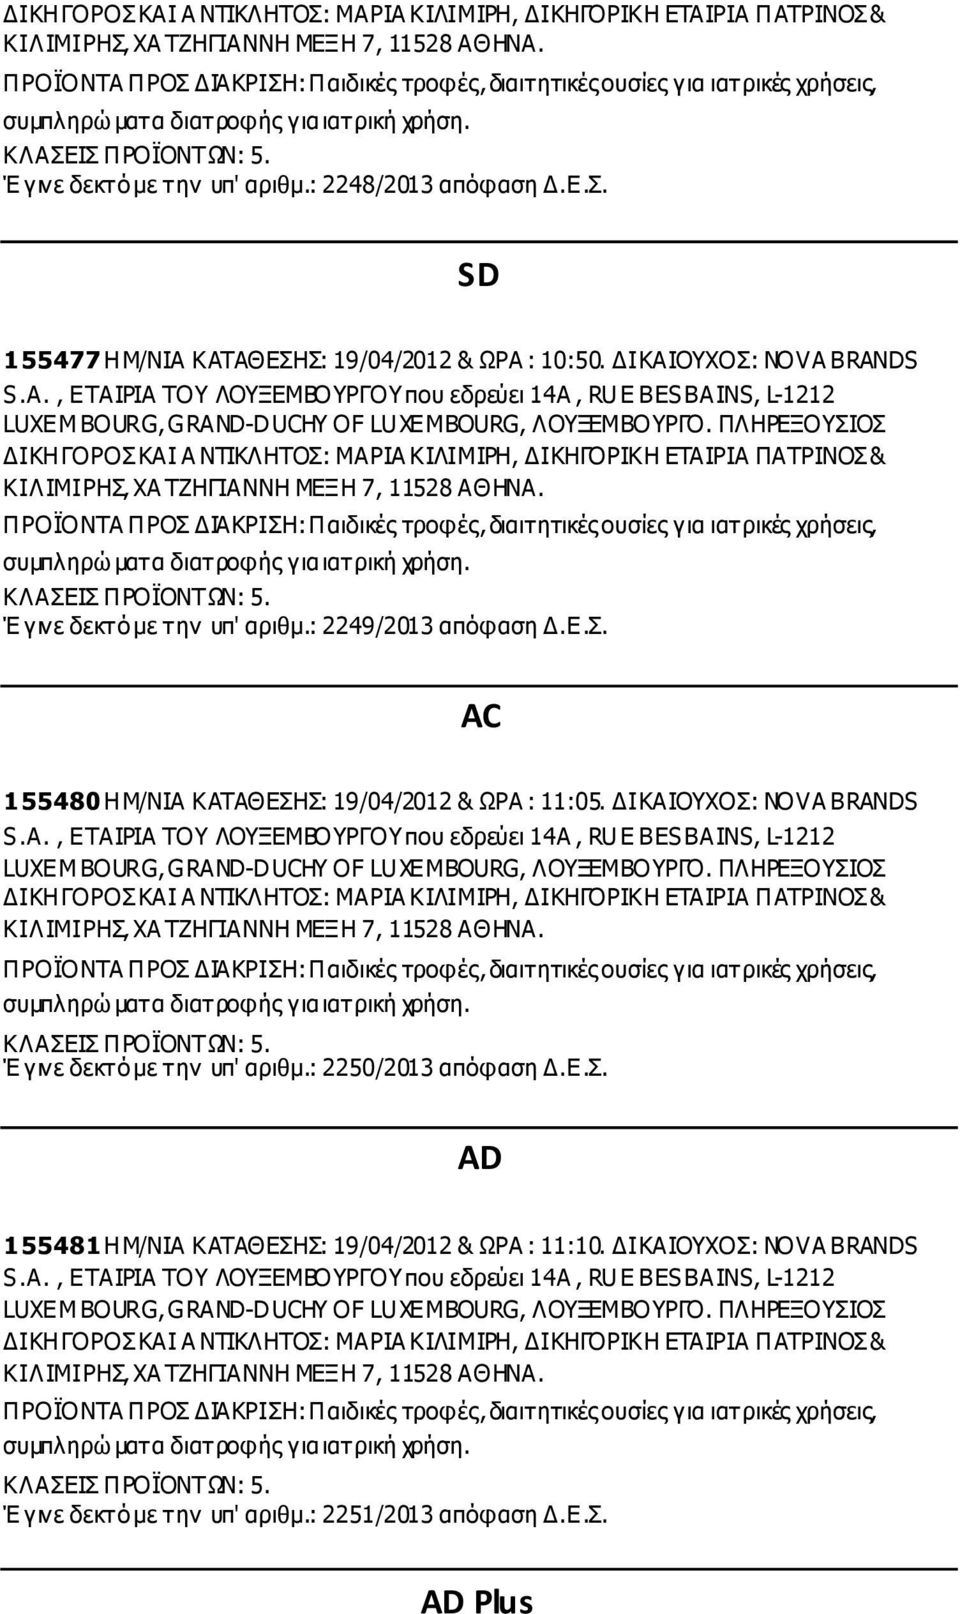 ΙΚΑΙΟΥΧΟΣ: NOVA BRANDS S.A., ΕΤΑΙΡΙΑ ΤΟΥ ΛΟΥΞΕΜΒΟΥΡΓΟΥ που εδρεύει 14A, RUE BES BAINS, L-1212 LUXEMBOURG, GRAND-DUCHY OF LUXEMBOURG, ΛΟΥΞΕΜΒΟΥΡΓΟ.